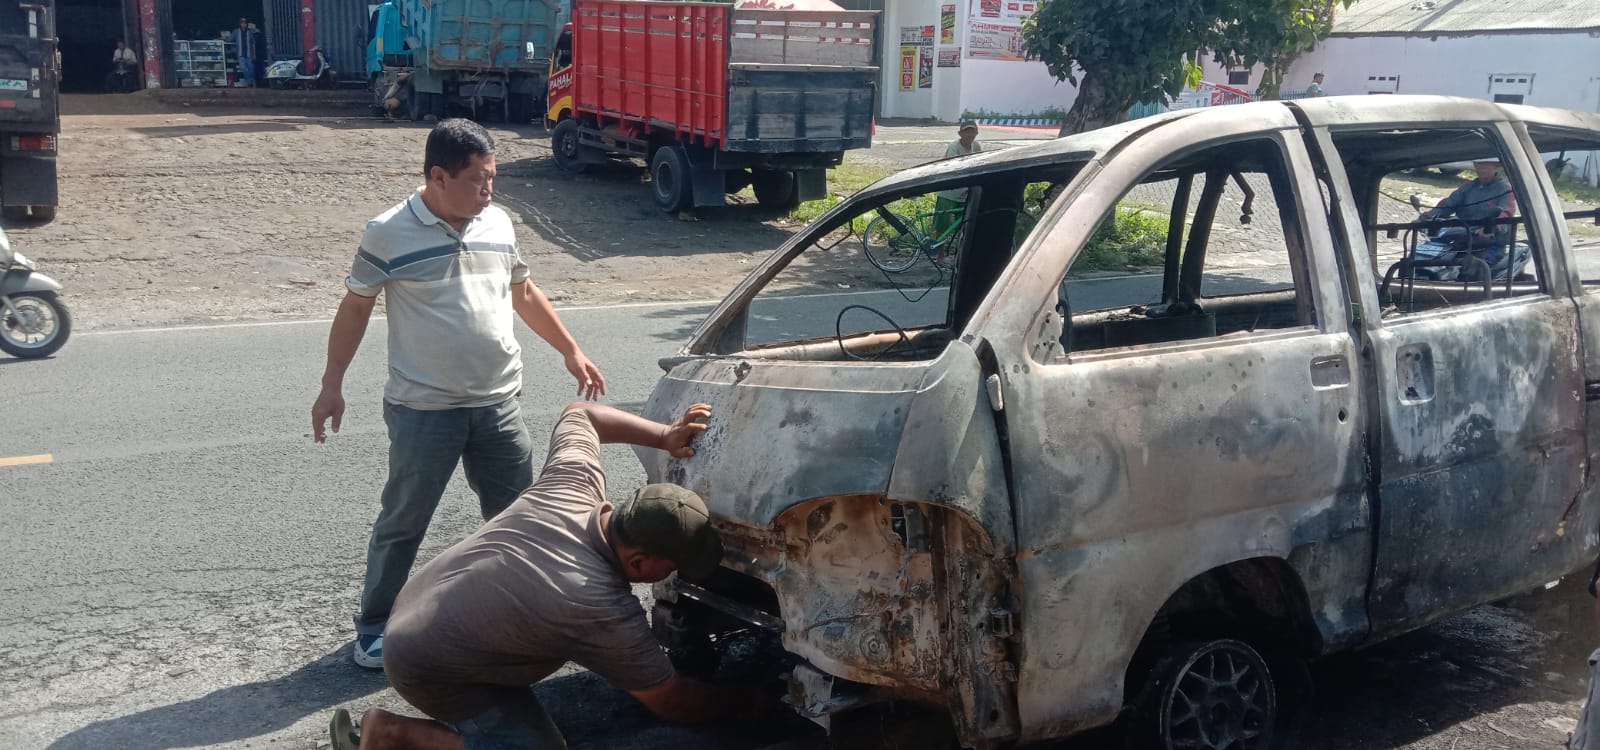 Akibat Perapian Bermasalah Mobil Daihatsu Esspas Terbakar